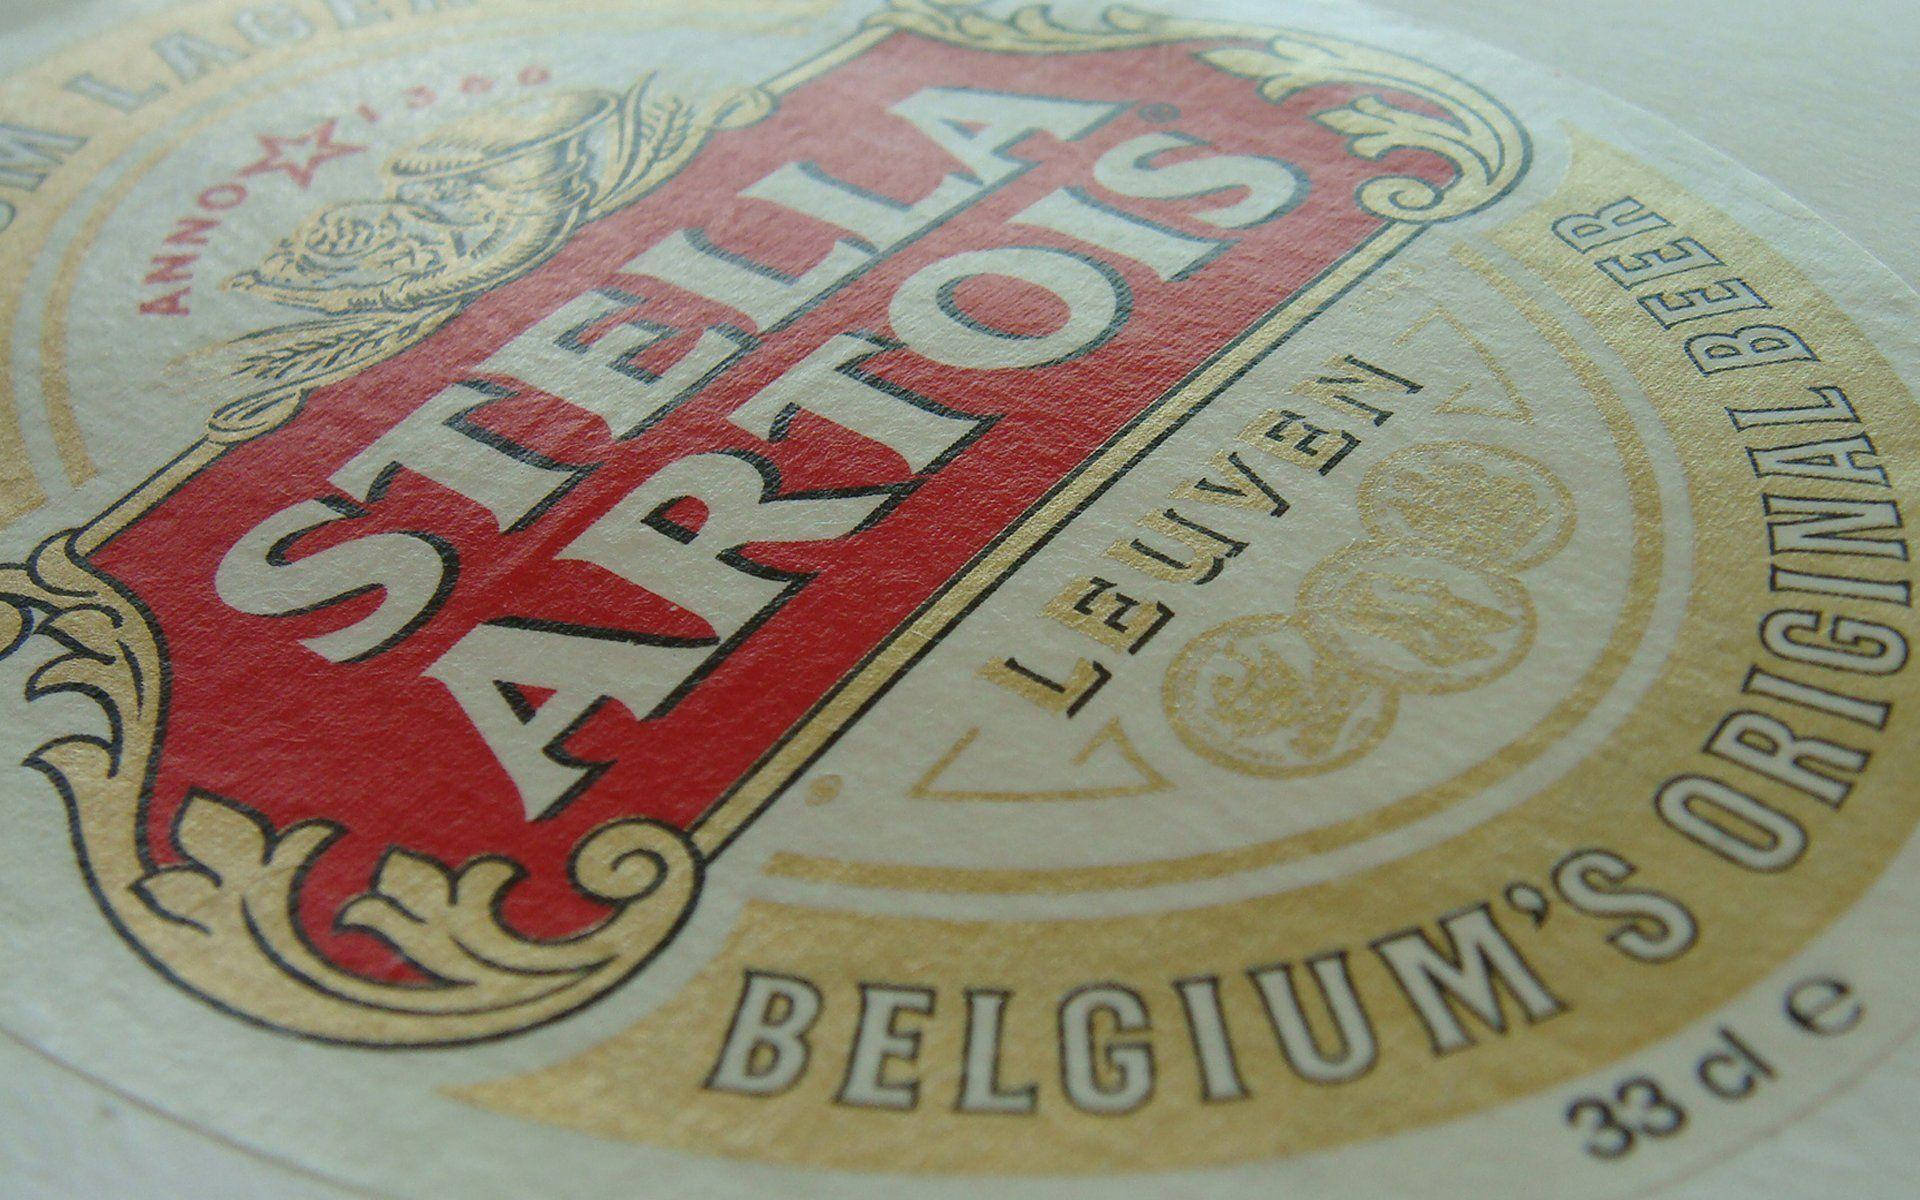 Belgiensursprungliga Öl Stella Artois. Wallpaper